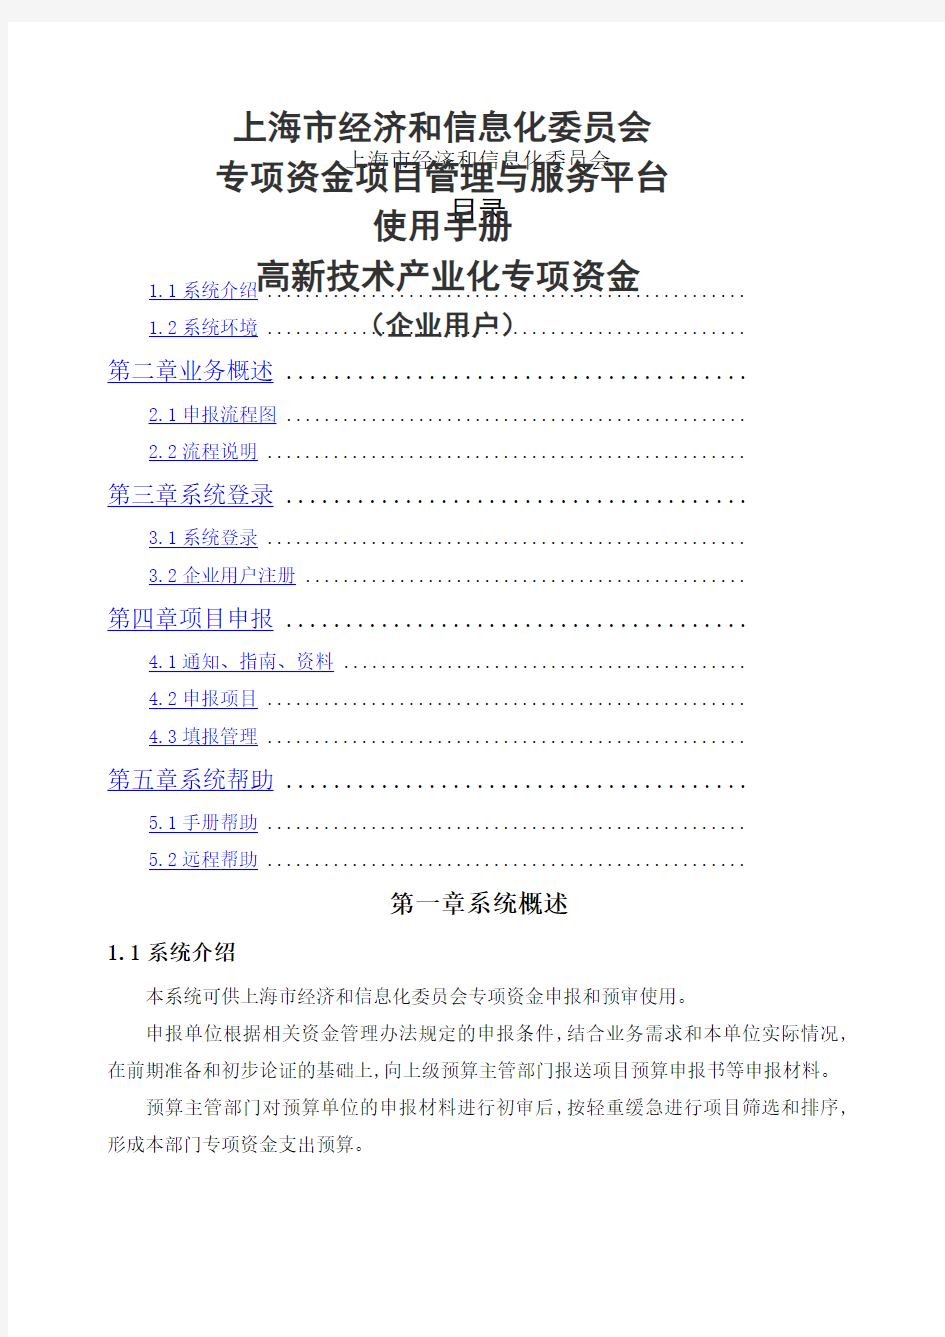 上海市经济和信息化委员会专项资金项目管理与服务平台使用手册高新